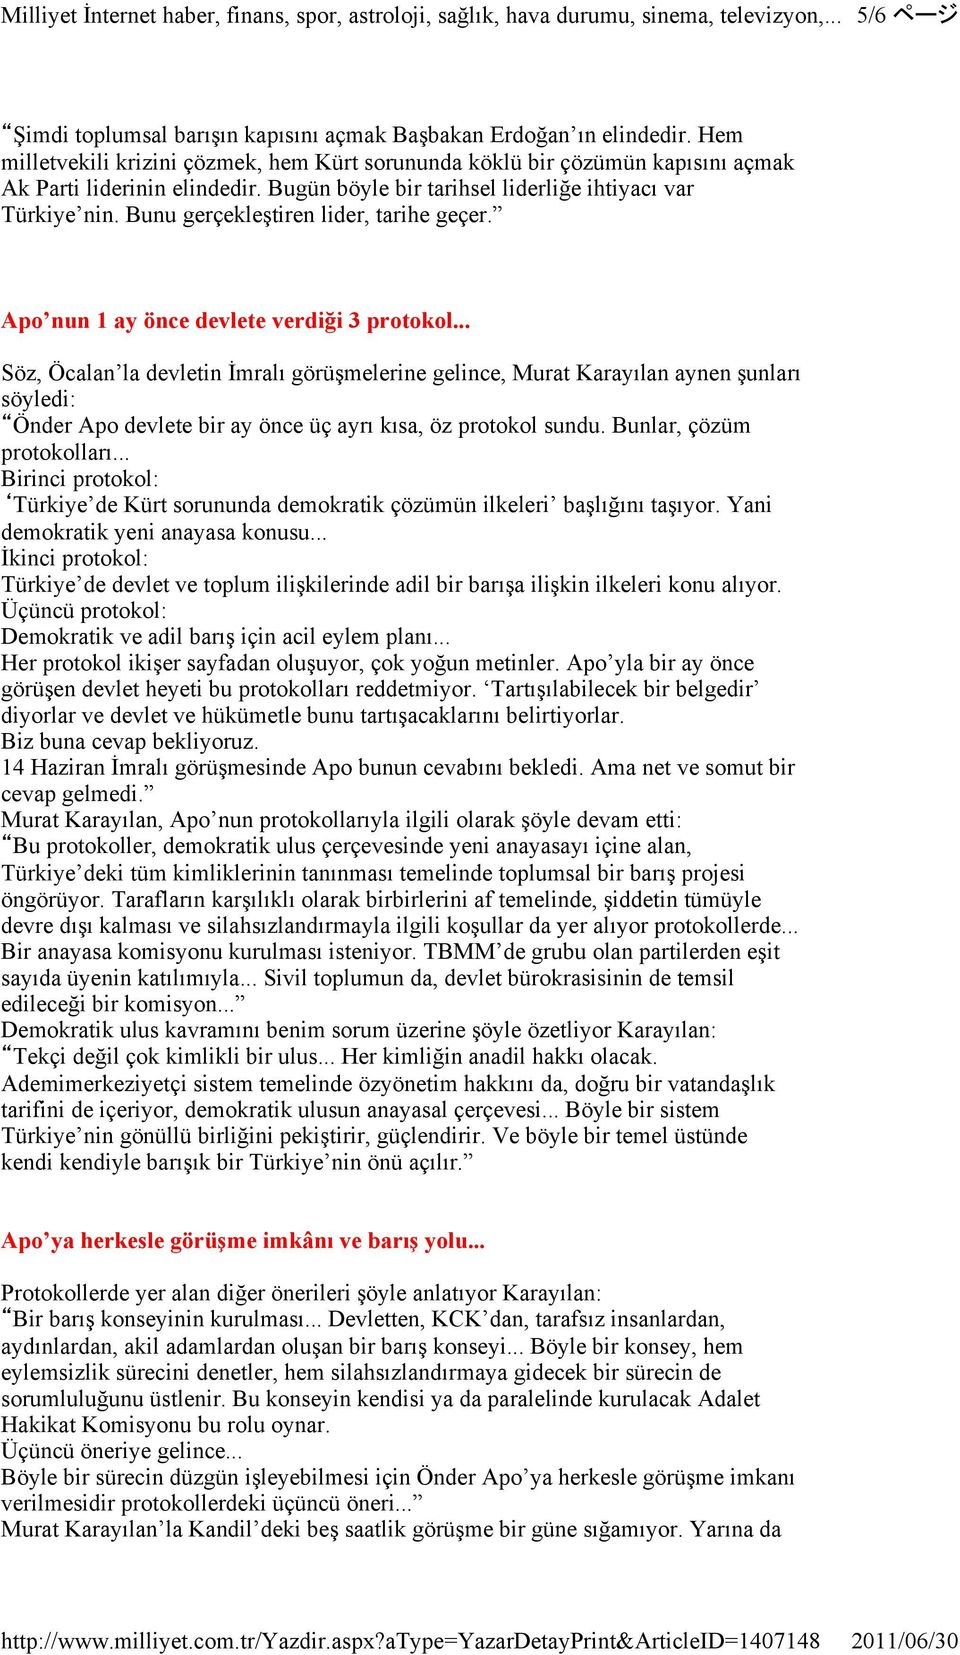 .. Söz, Öcalan la devletin Đmralı görüşmelerine gelince, Murat Karayılan aynen şunları söyledi: Önder Apo devlete bir ay önce üç ayrı kısa, öz protokol sundu. Bunlar, çözüm protokolları.